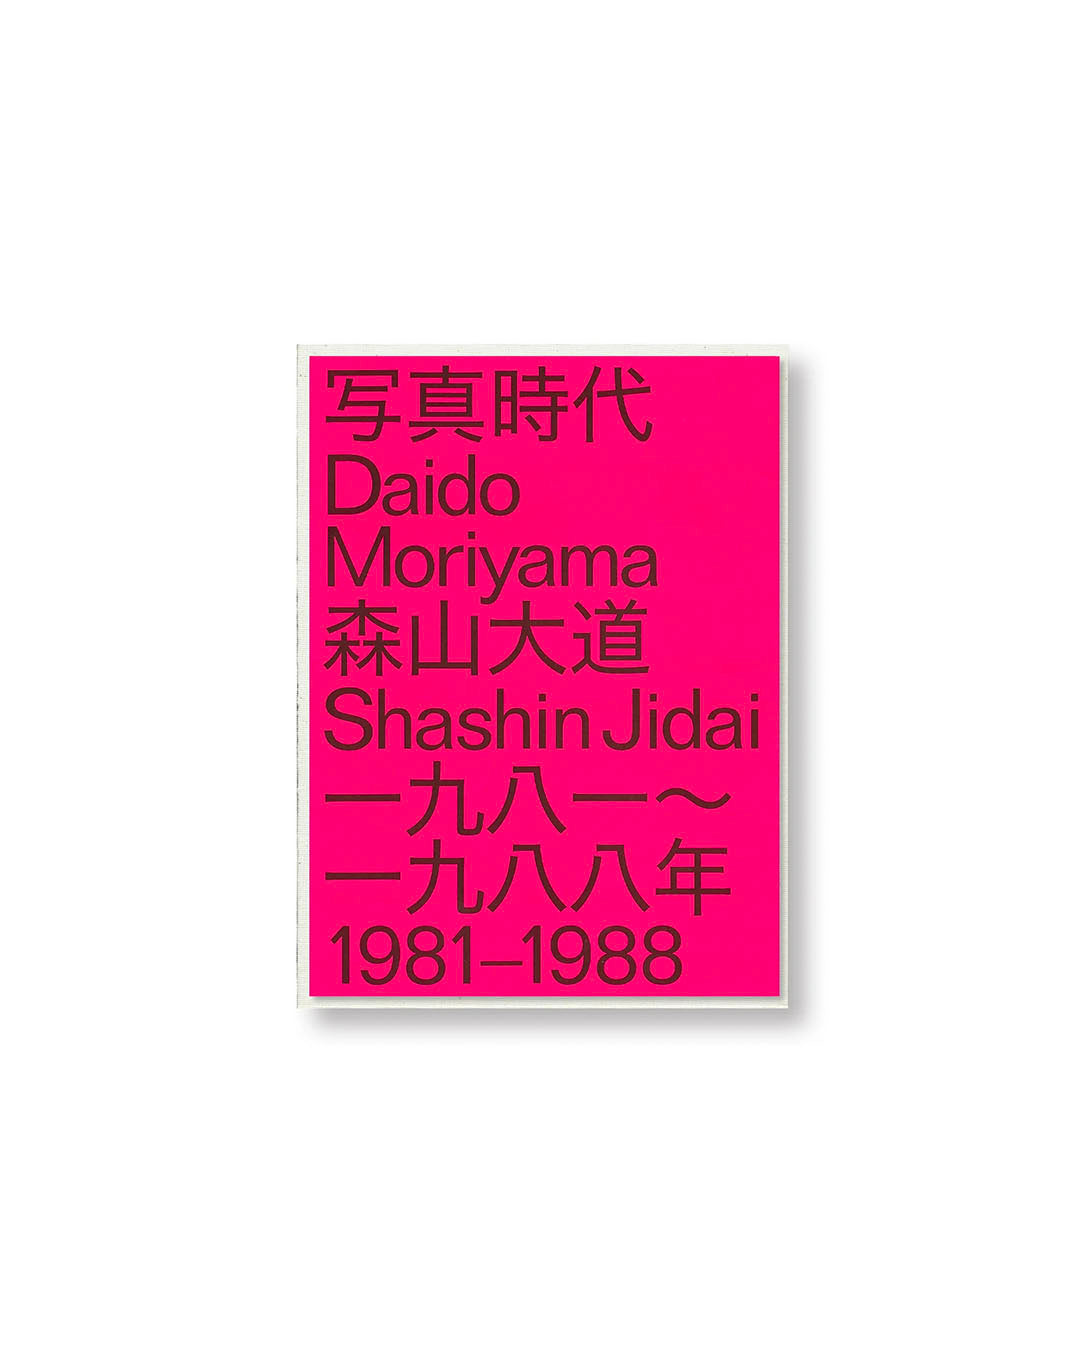 [DAIDO MORIYAMA] DAIDO MORIYAMA SHASIN JIDAI 1981 - 1988 by Daido Moriyama